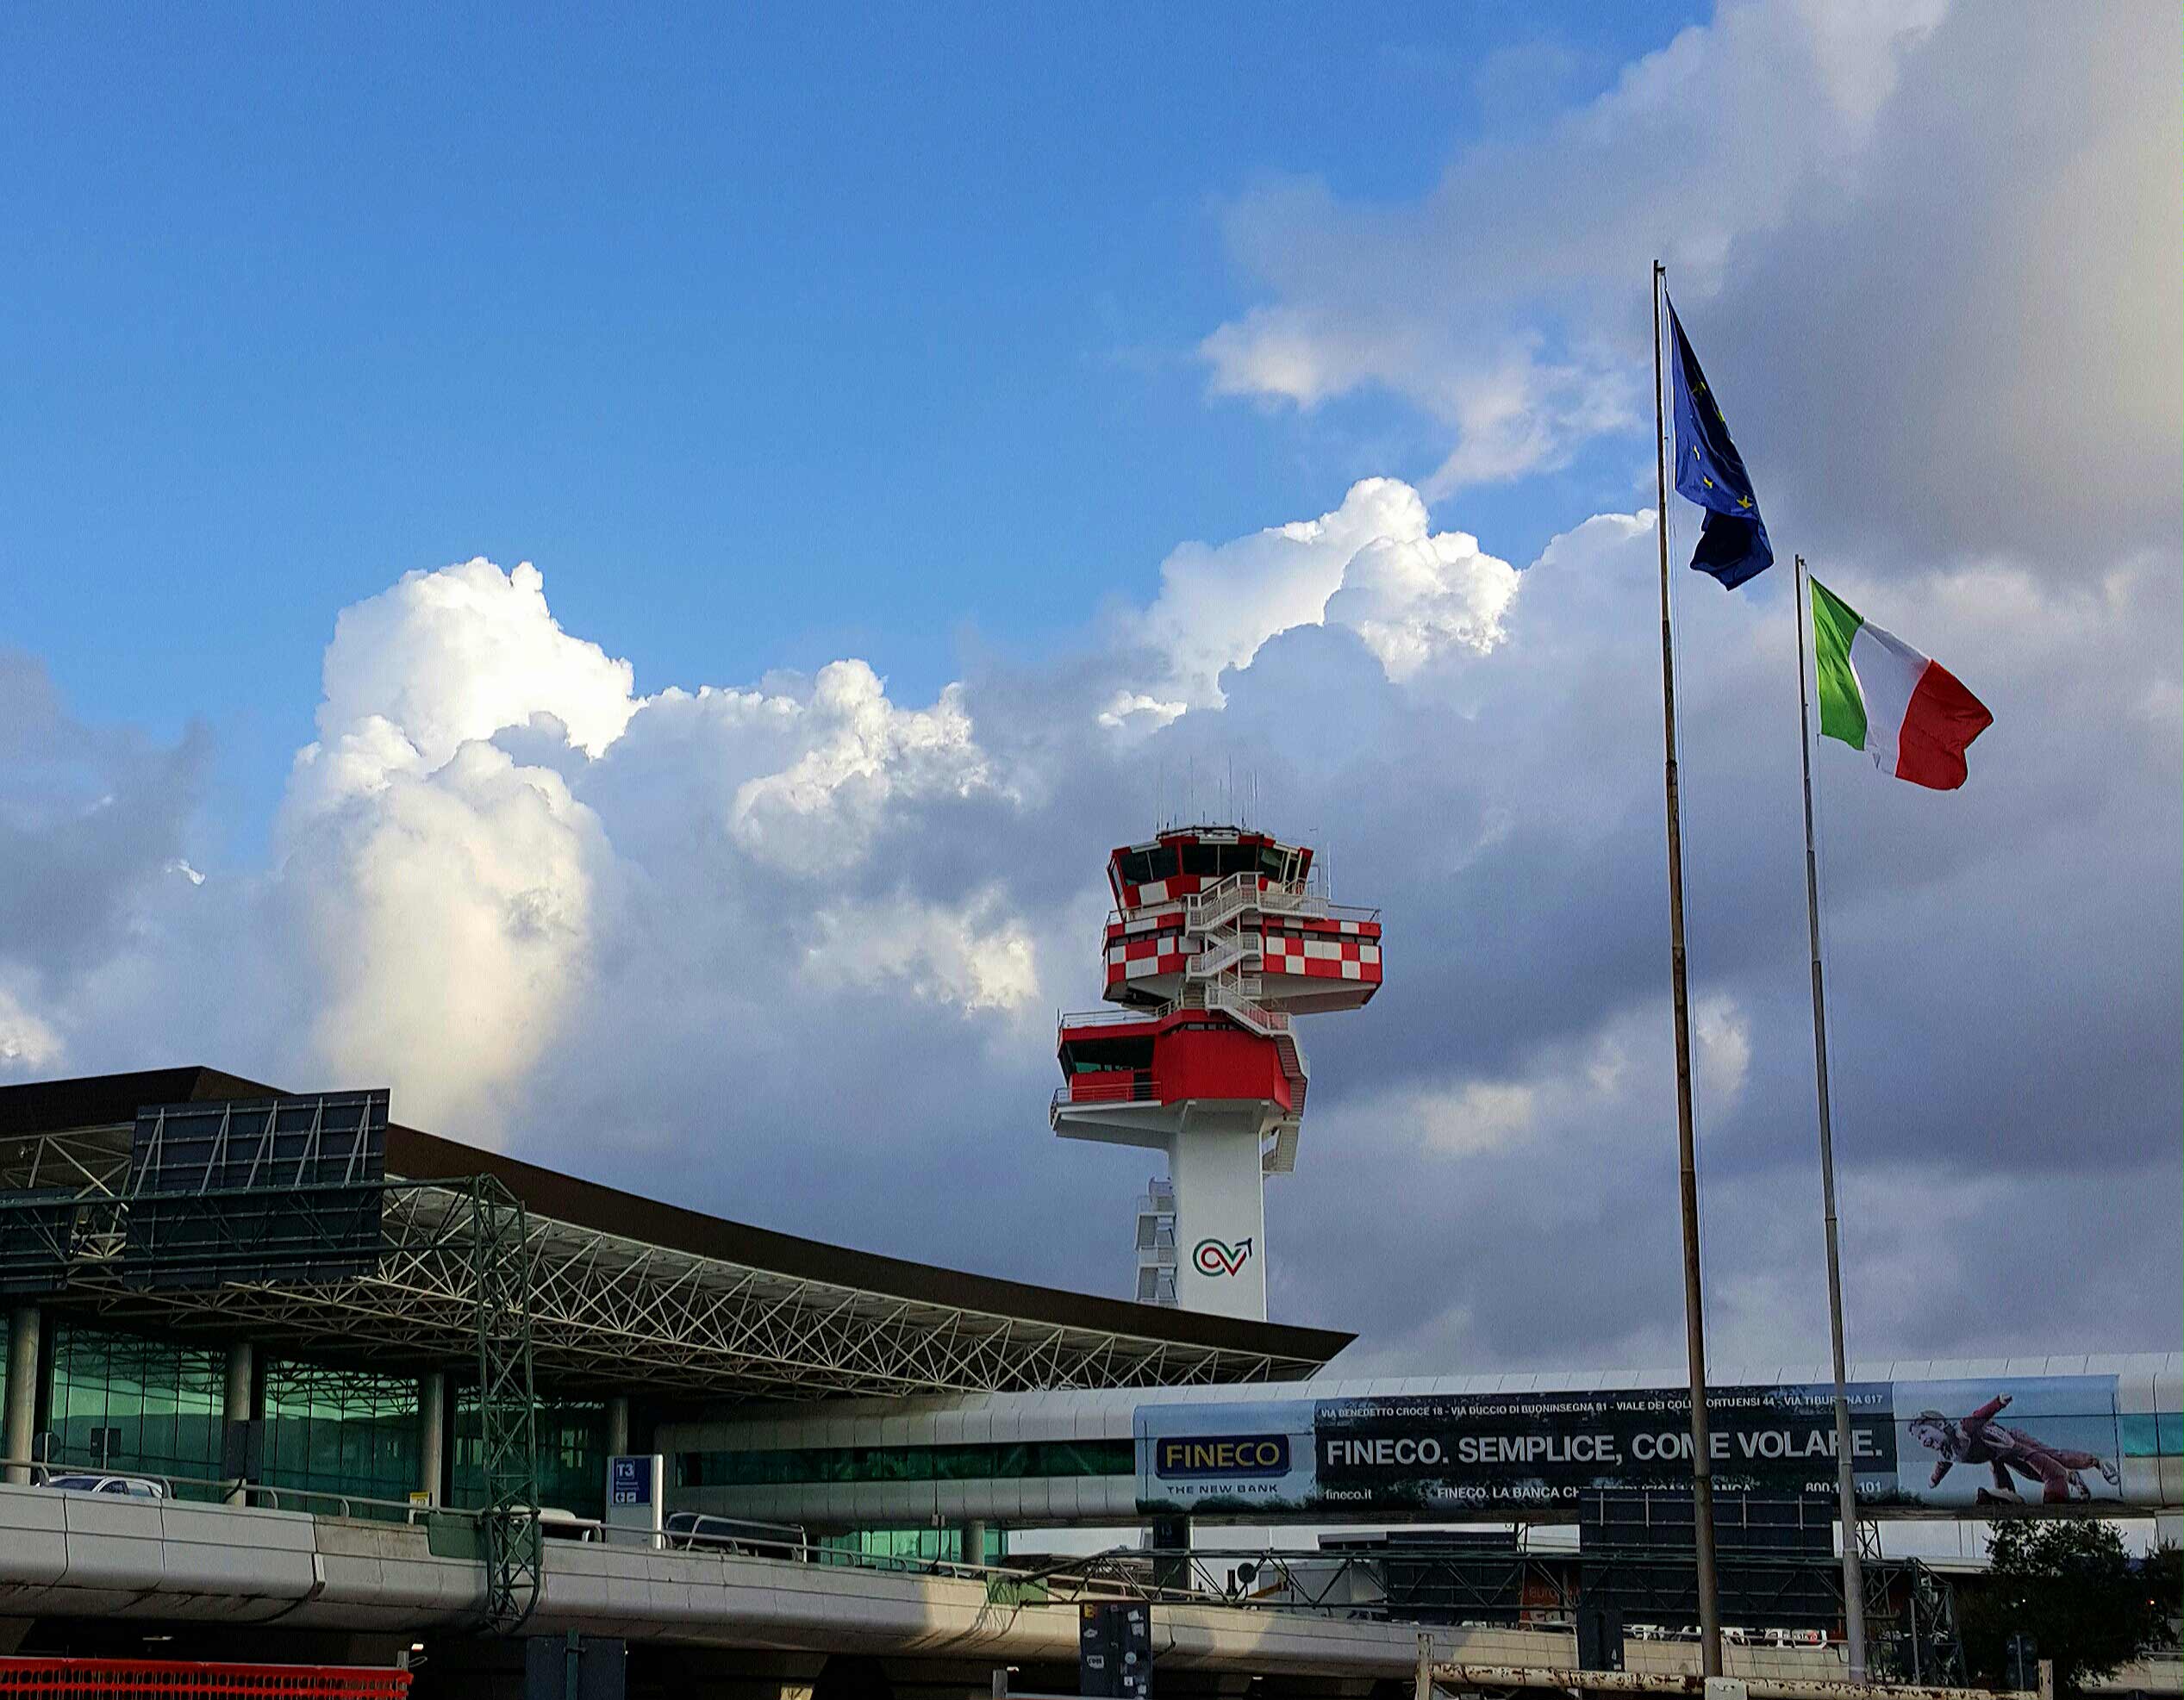 Rome Fiumicino Airport still has improvements to make.